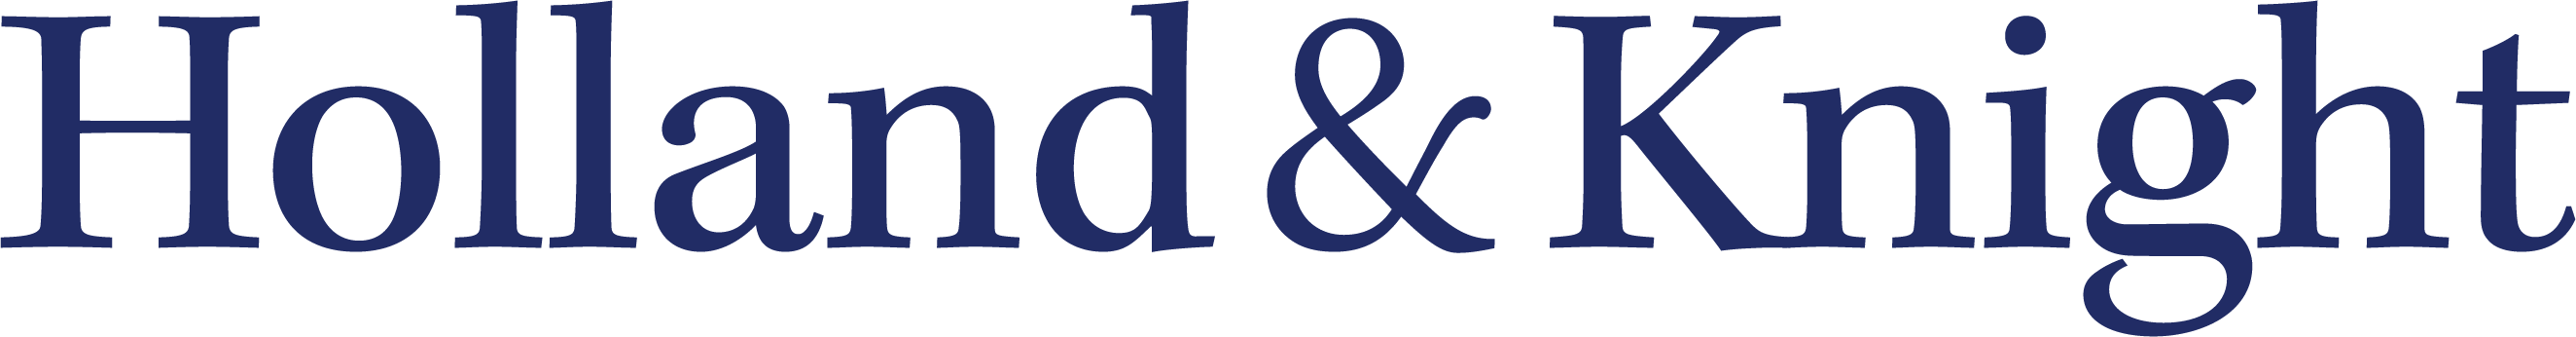 Holland & Knight LLP Company Logo